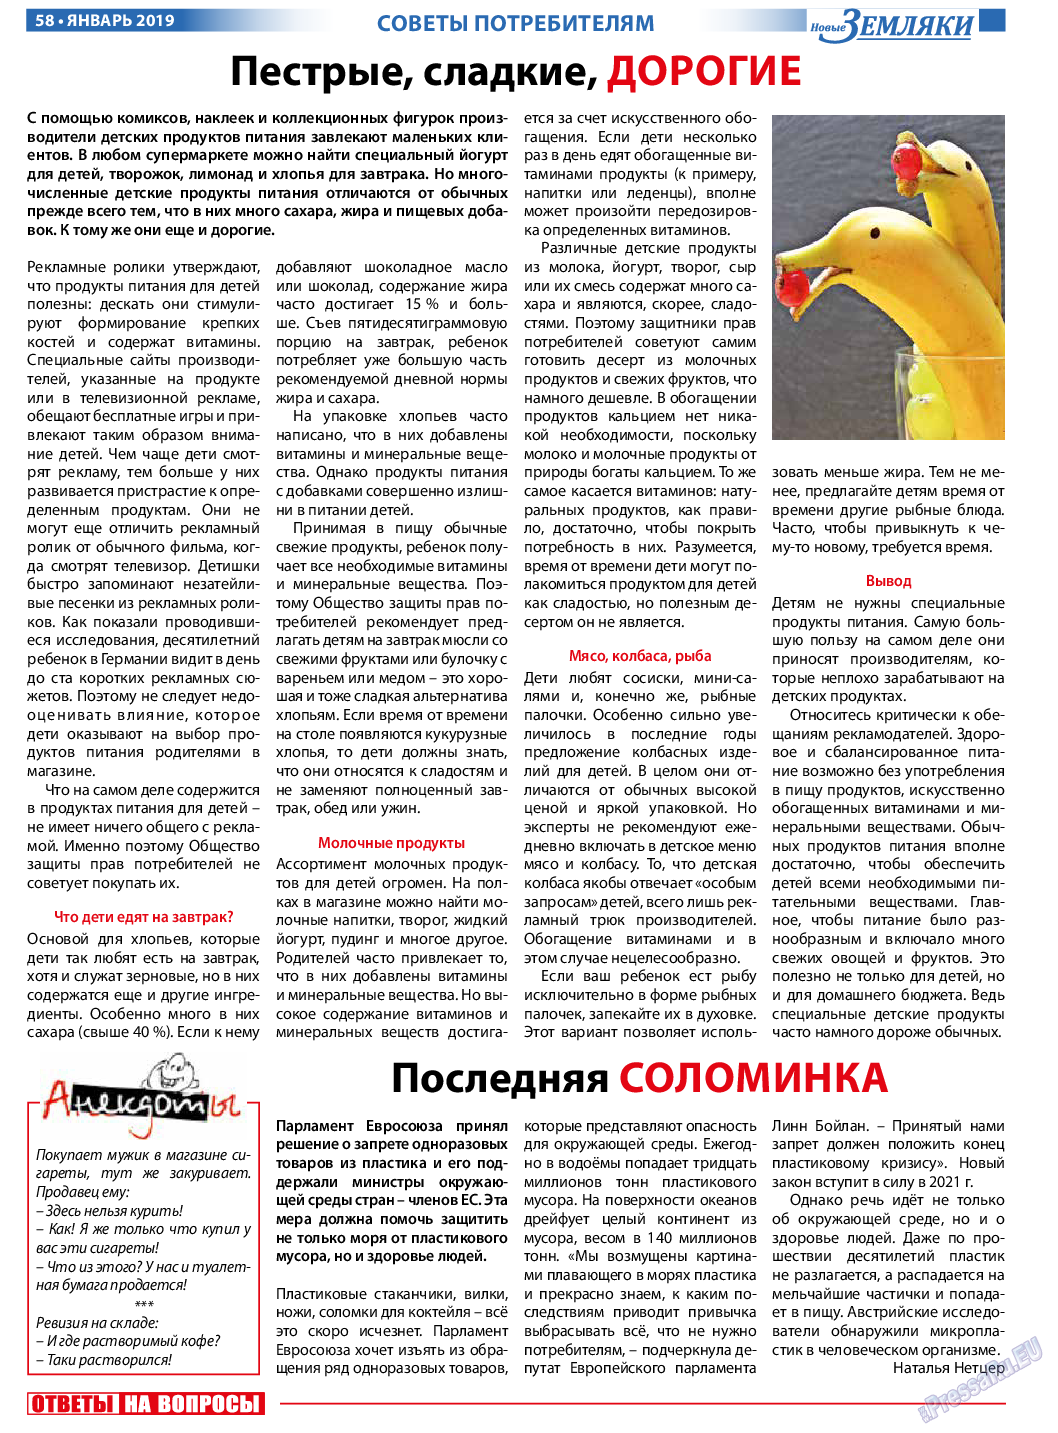 Новые Земляки (газета). 2019 год, номер 1, стр. 58